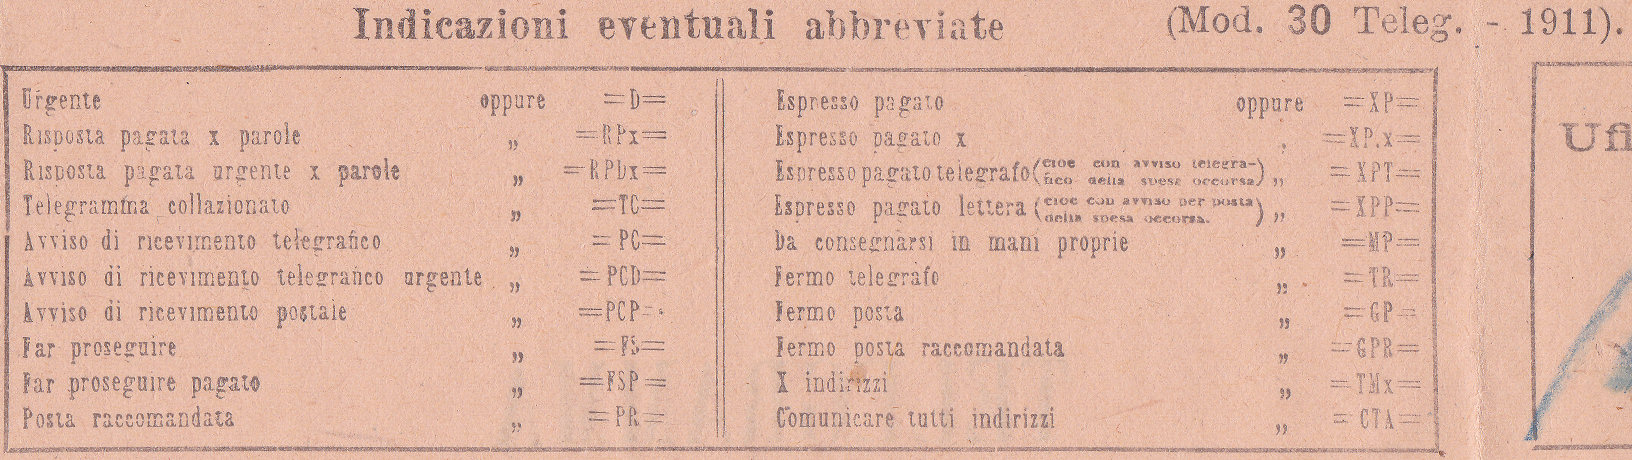 Verona 1911 abbreviations